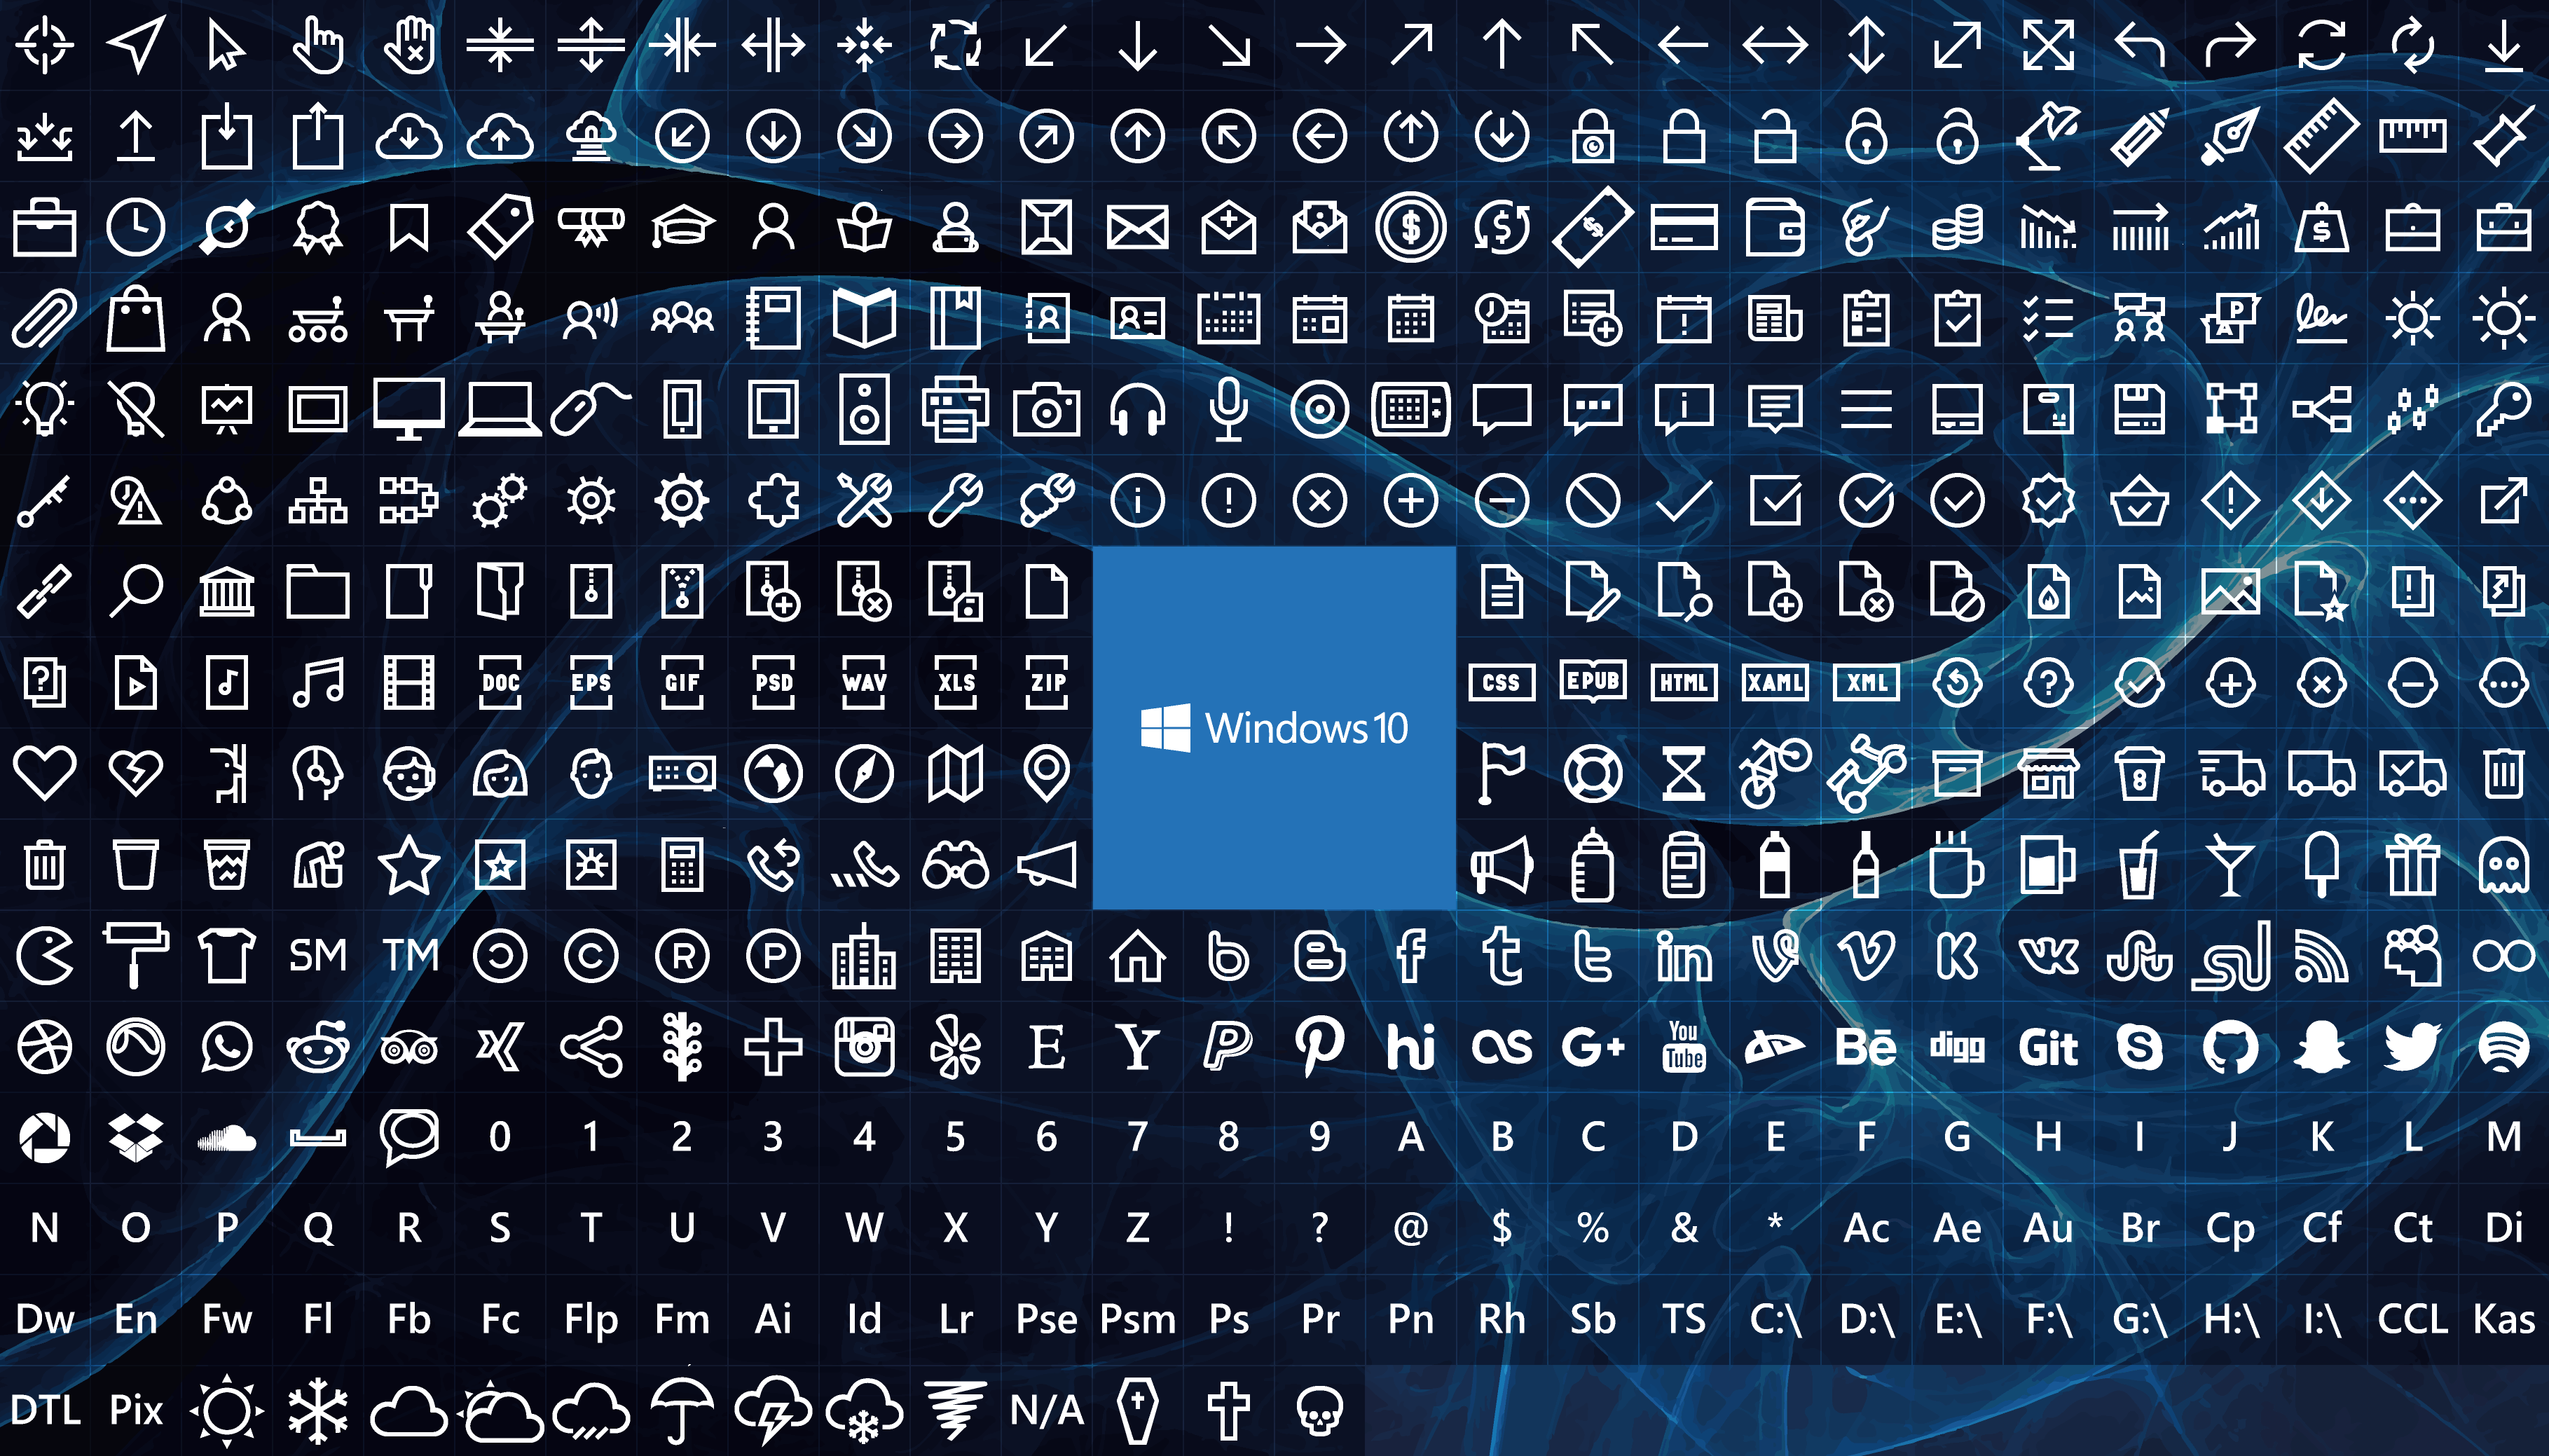 Наборы значков для windows 10. Иконки для Windows 10. Иконки ярлыков виндовс 10. Иконки для приложений Windows 10. Значок Windows 10.